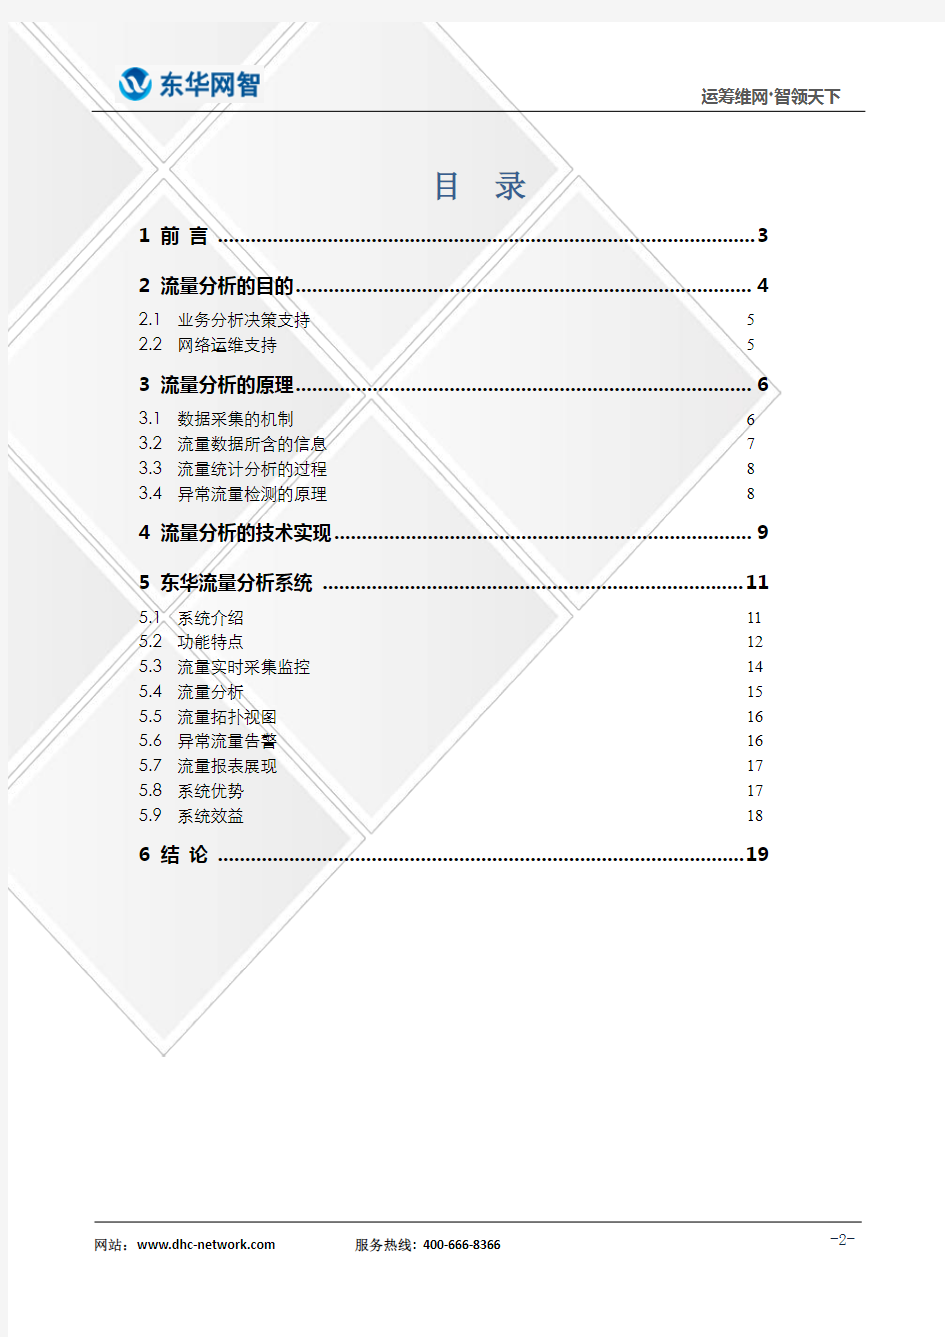 东华流量分析系统技术白皮书v3.0